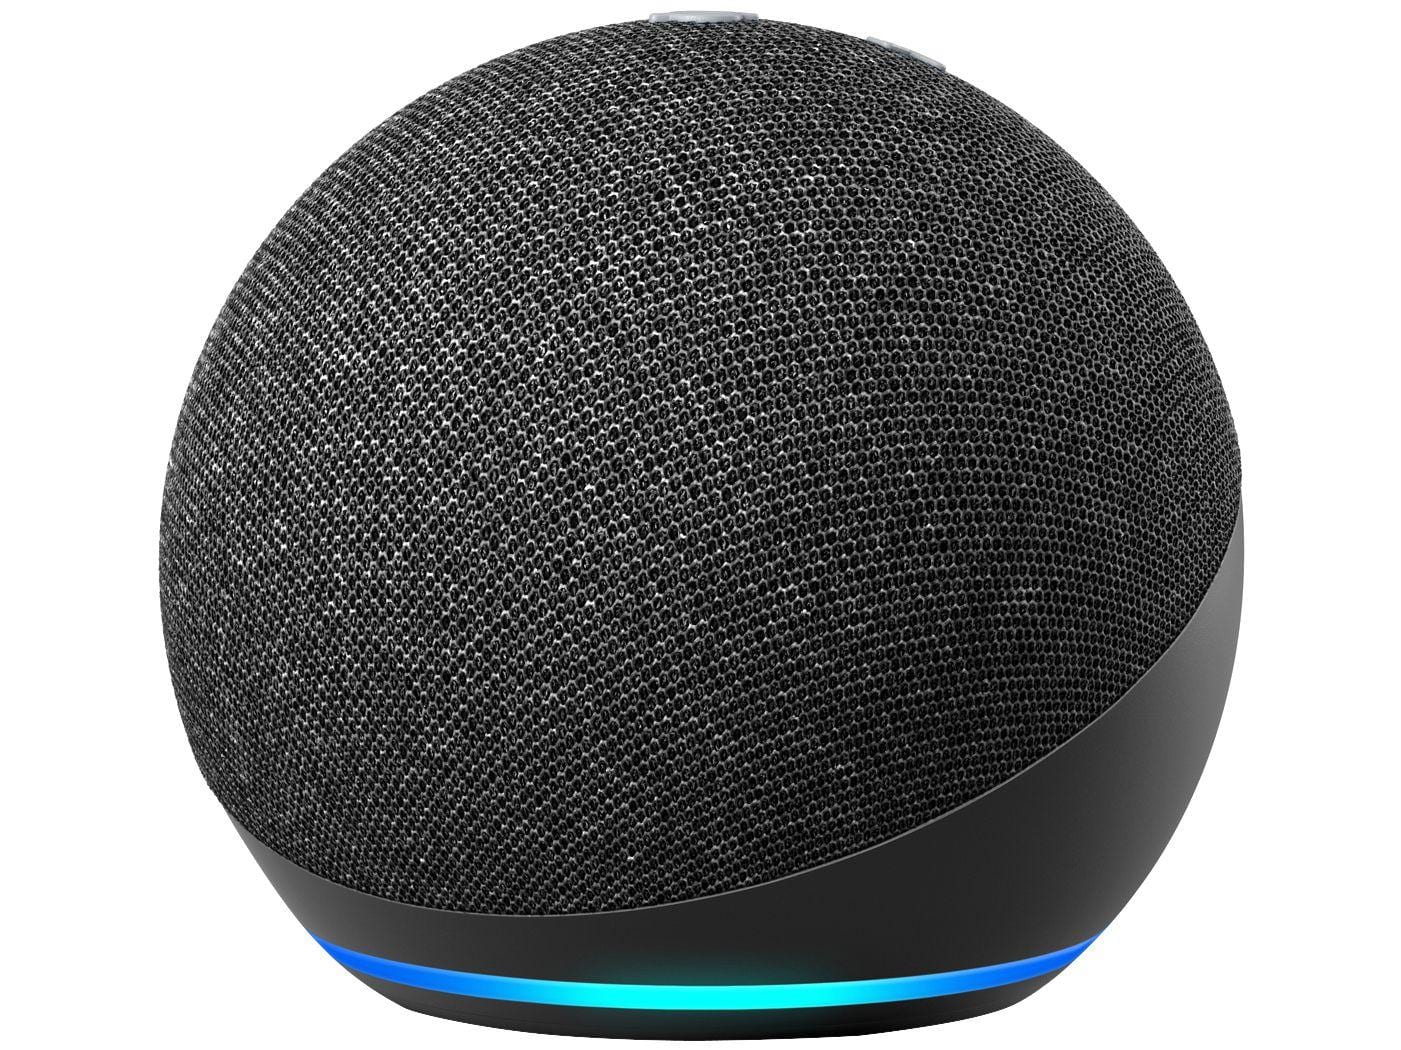 Smart Speaker Amazon Echo Dot 4ª Geração com Alexa – Preto